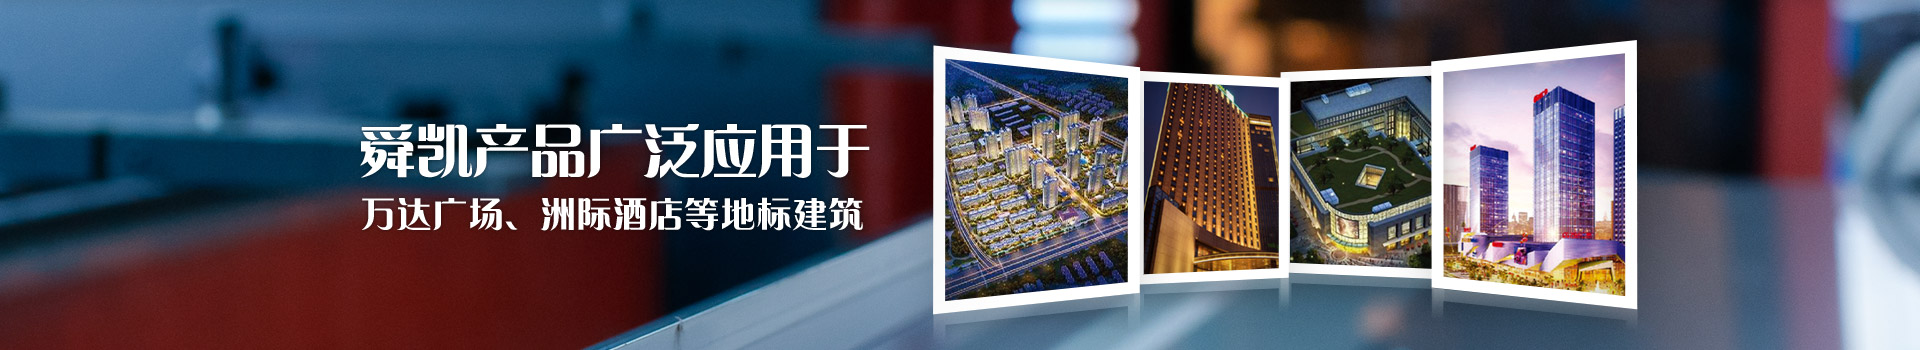 九州官方网站产品广泛应用于吾悦广场、万达广场、洲际酒店等全国性地标建筑